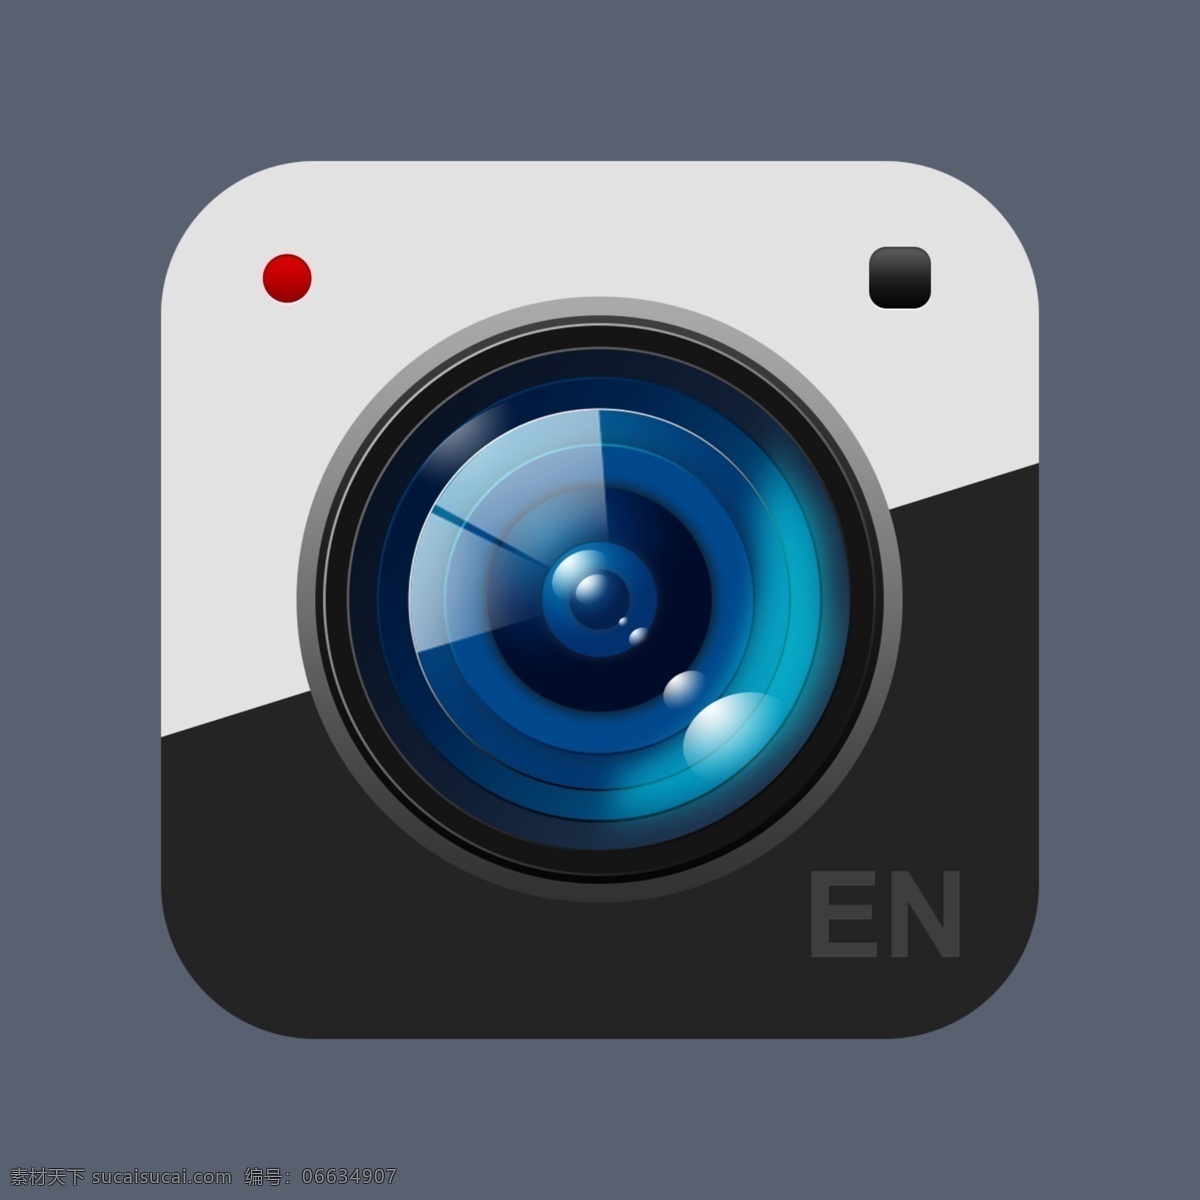 相机 启动 图标 icon 相机图标 相机icon 相机启动图标